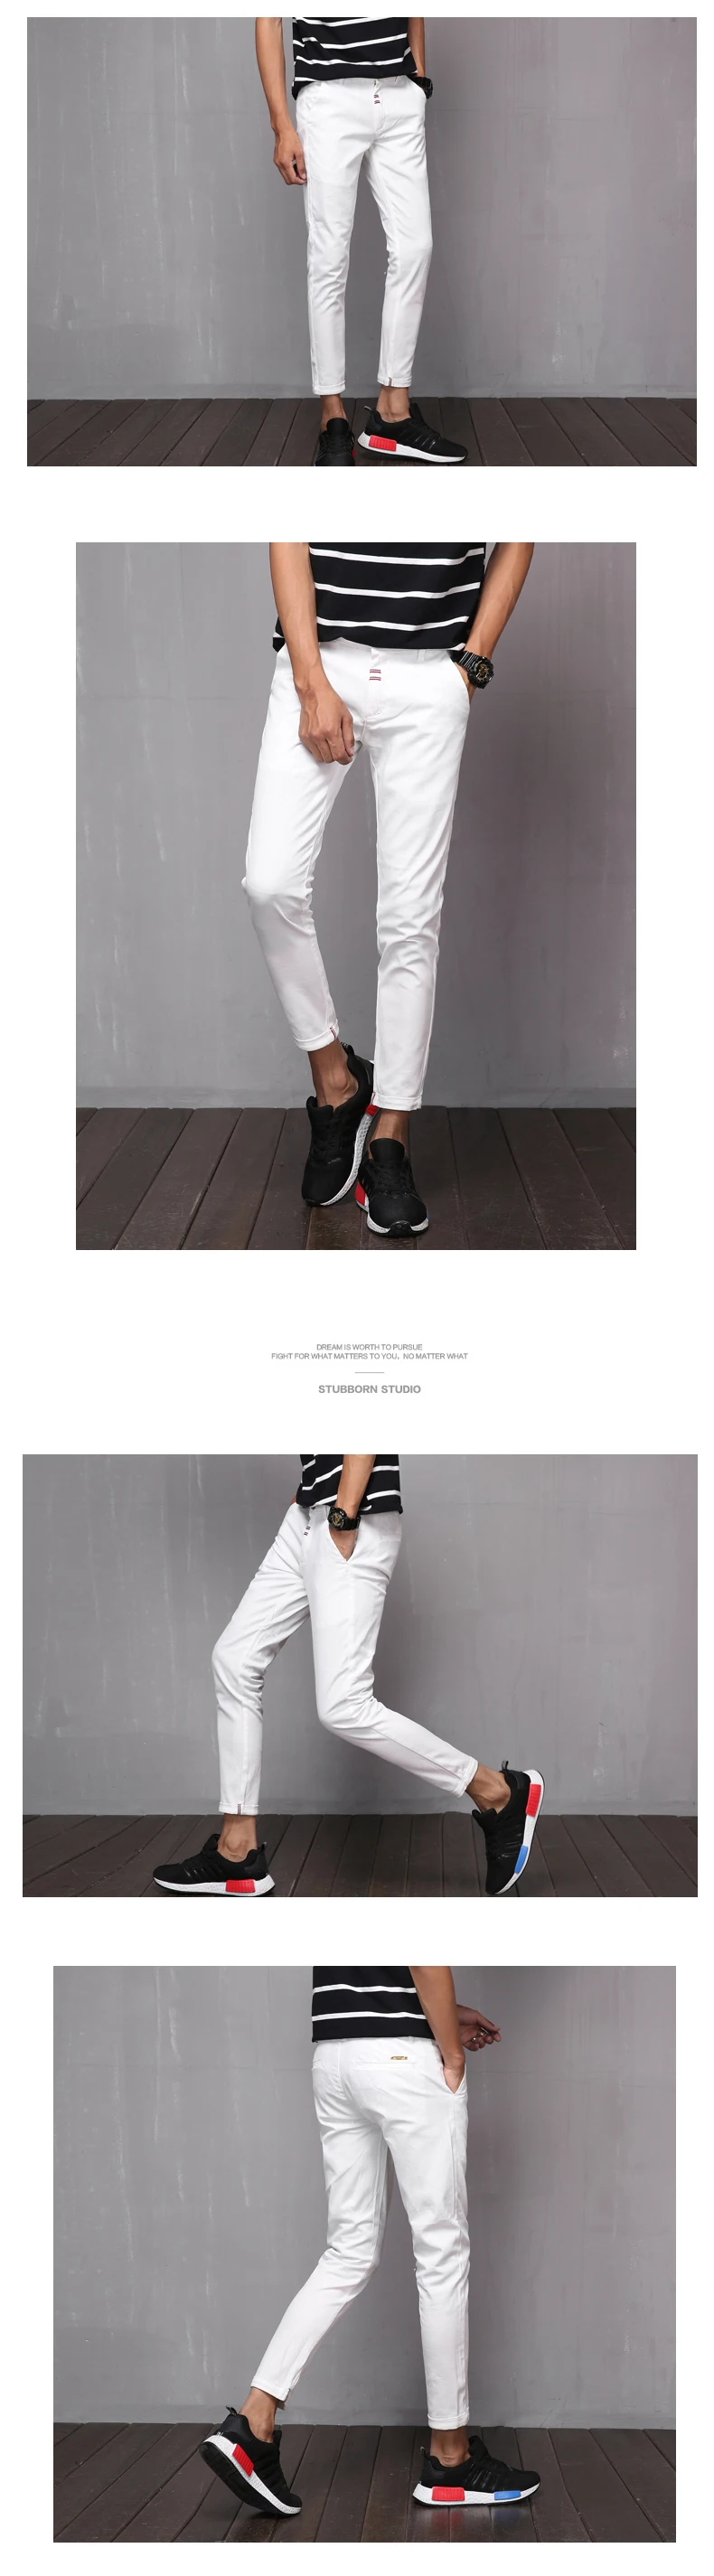 2019 новый дизайн повседневные мужские брюки хлопковые тонкие брюки прямые брюки мужские досуг черные эластичные модные деловые девятые